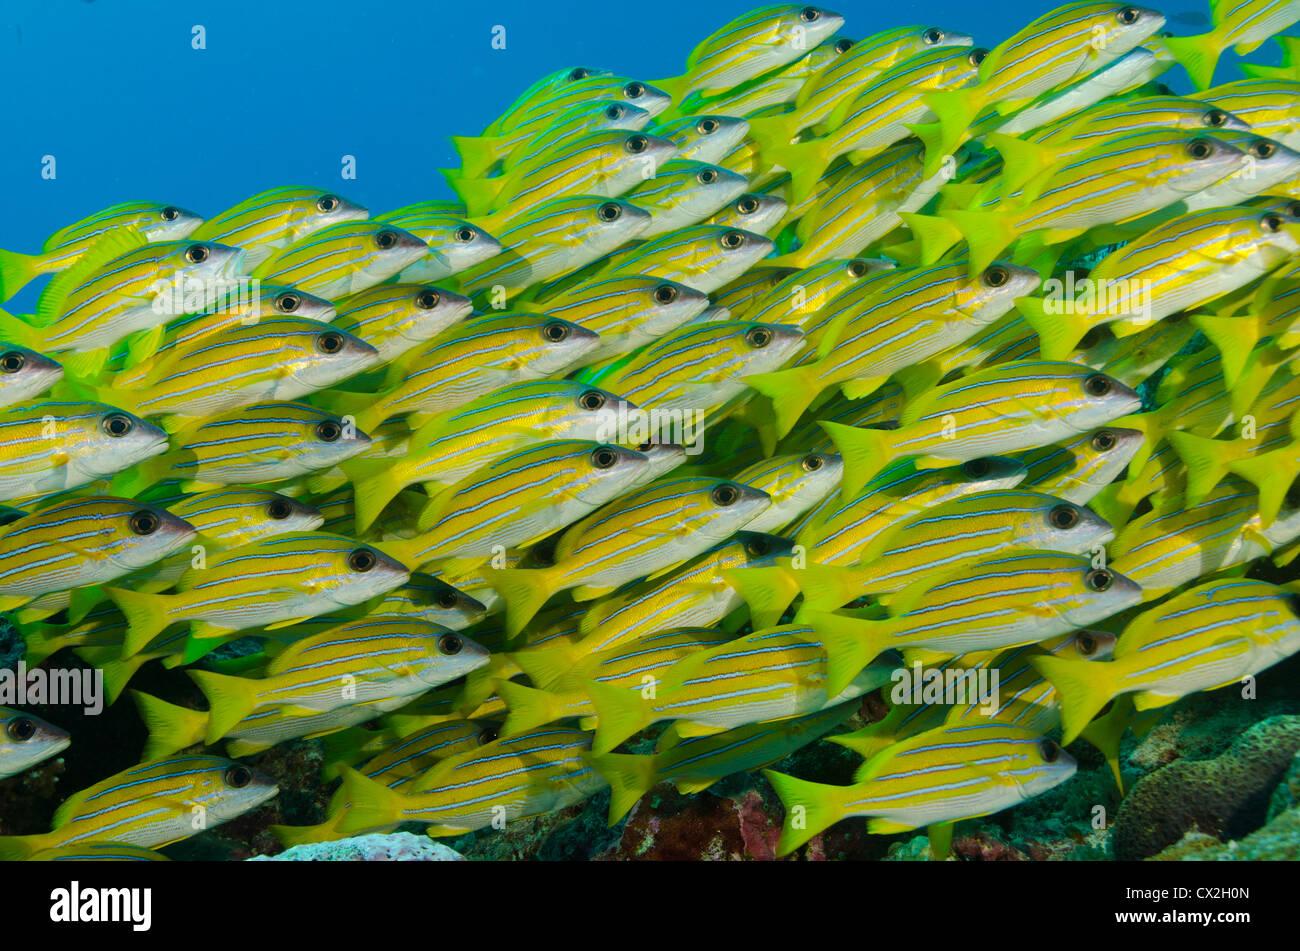 Escena subacuática de Palau, arrecifes de coral, el pargo ronco, escuela de peces, la vida del mar, océano, mar, submarinismo, agua azul, familia Foto de stock